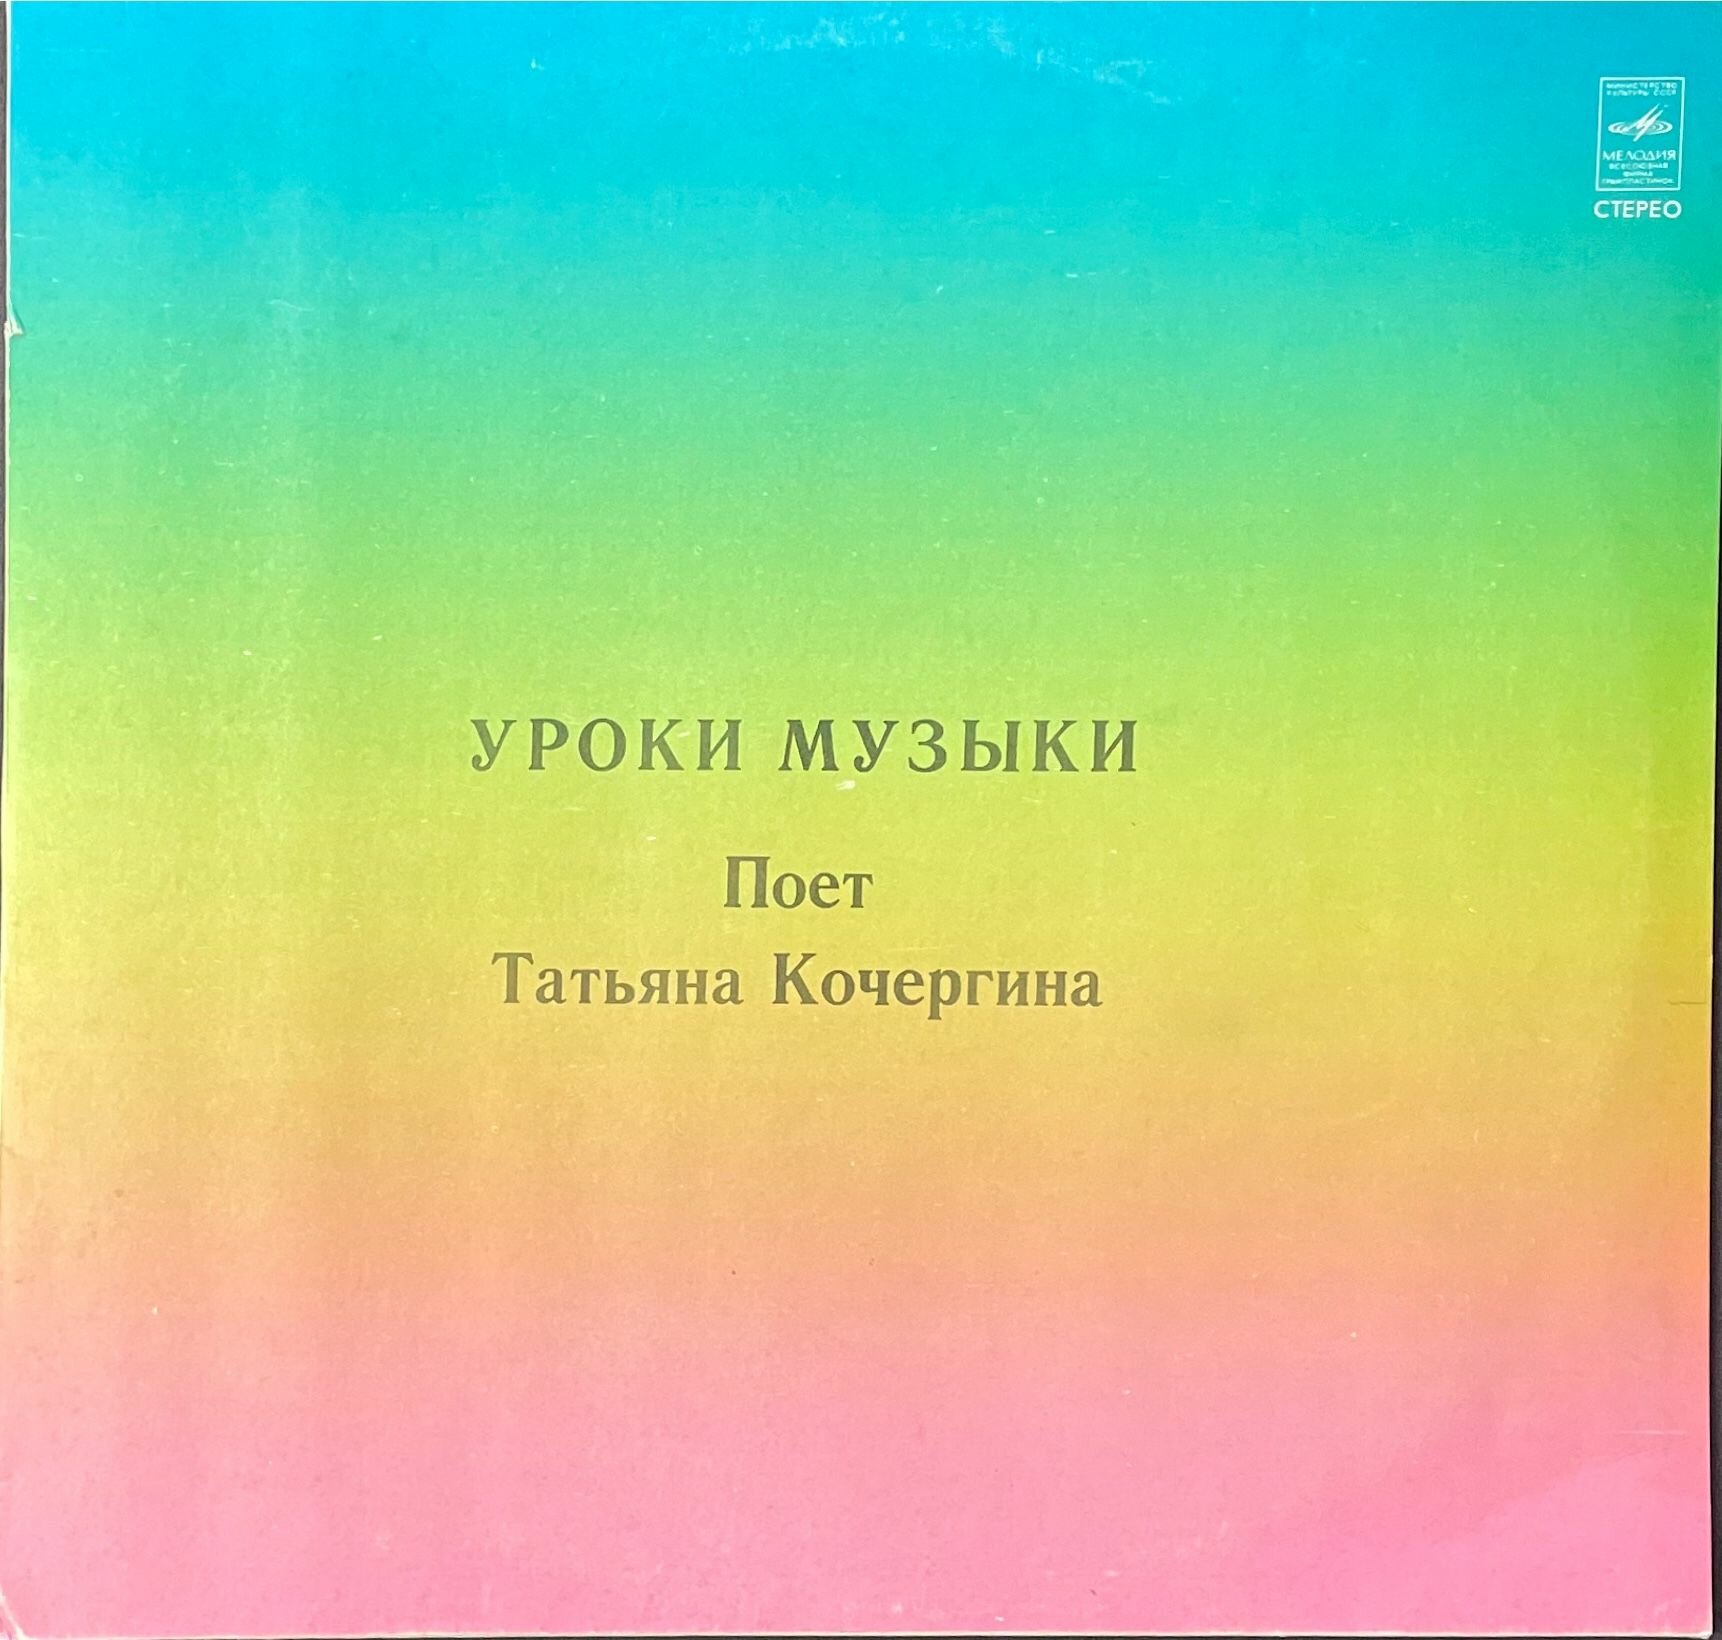 Виниловая пластинка Уроки музыки Поет Татьяна Кочергина